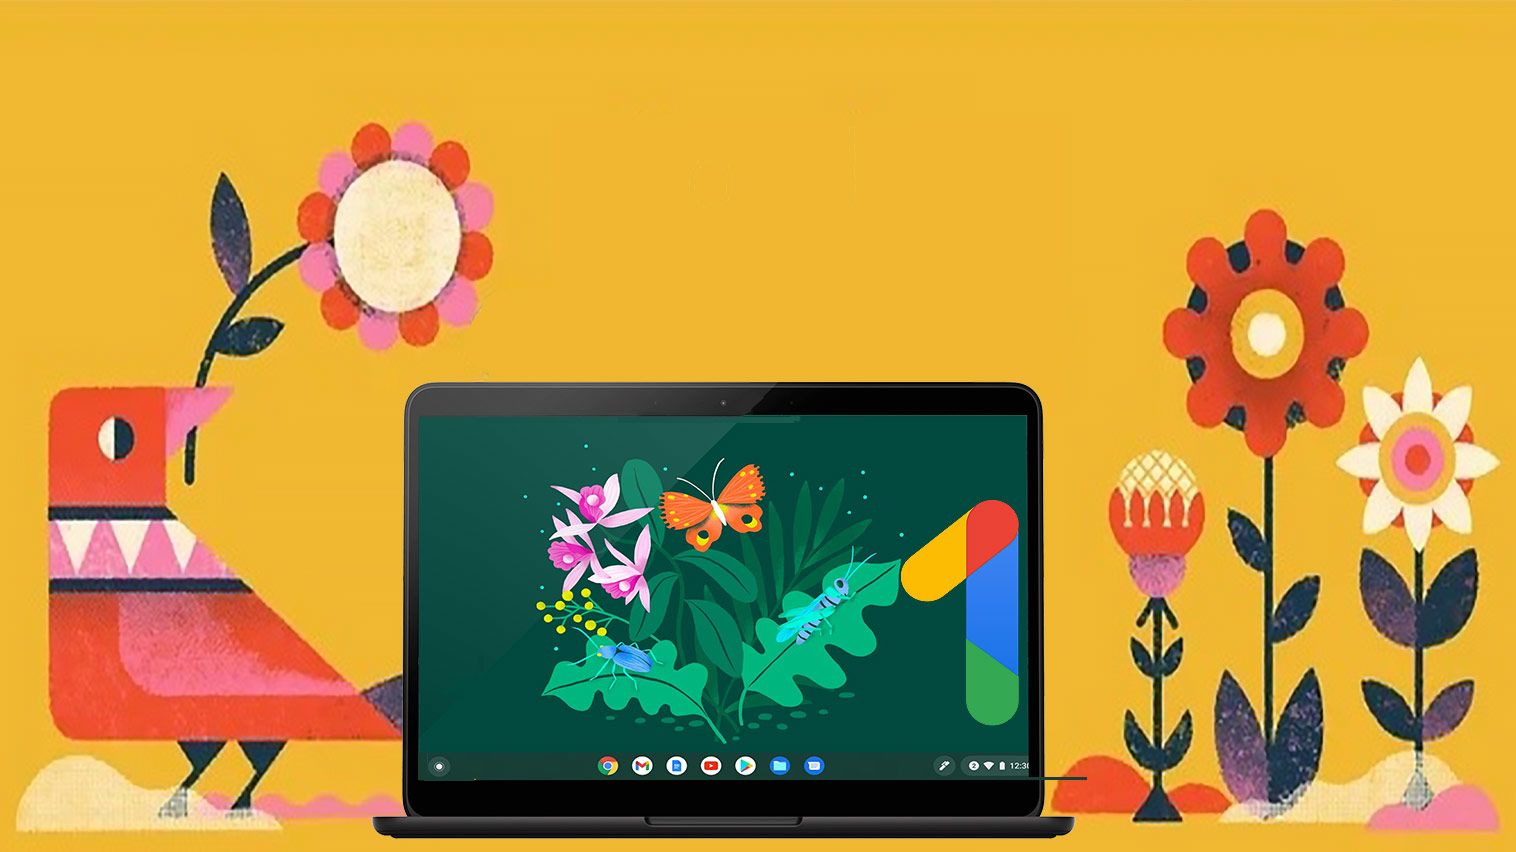 Uma ilustração de um pássaro vermelho, um Chromebook e várias flores em um fundo açafrão